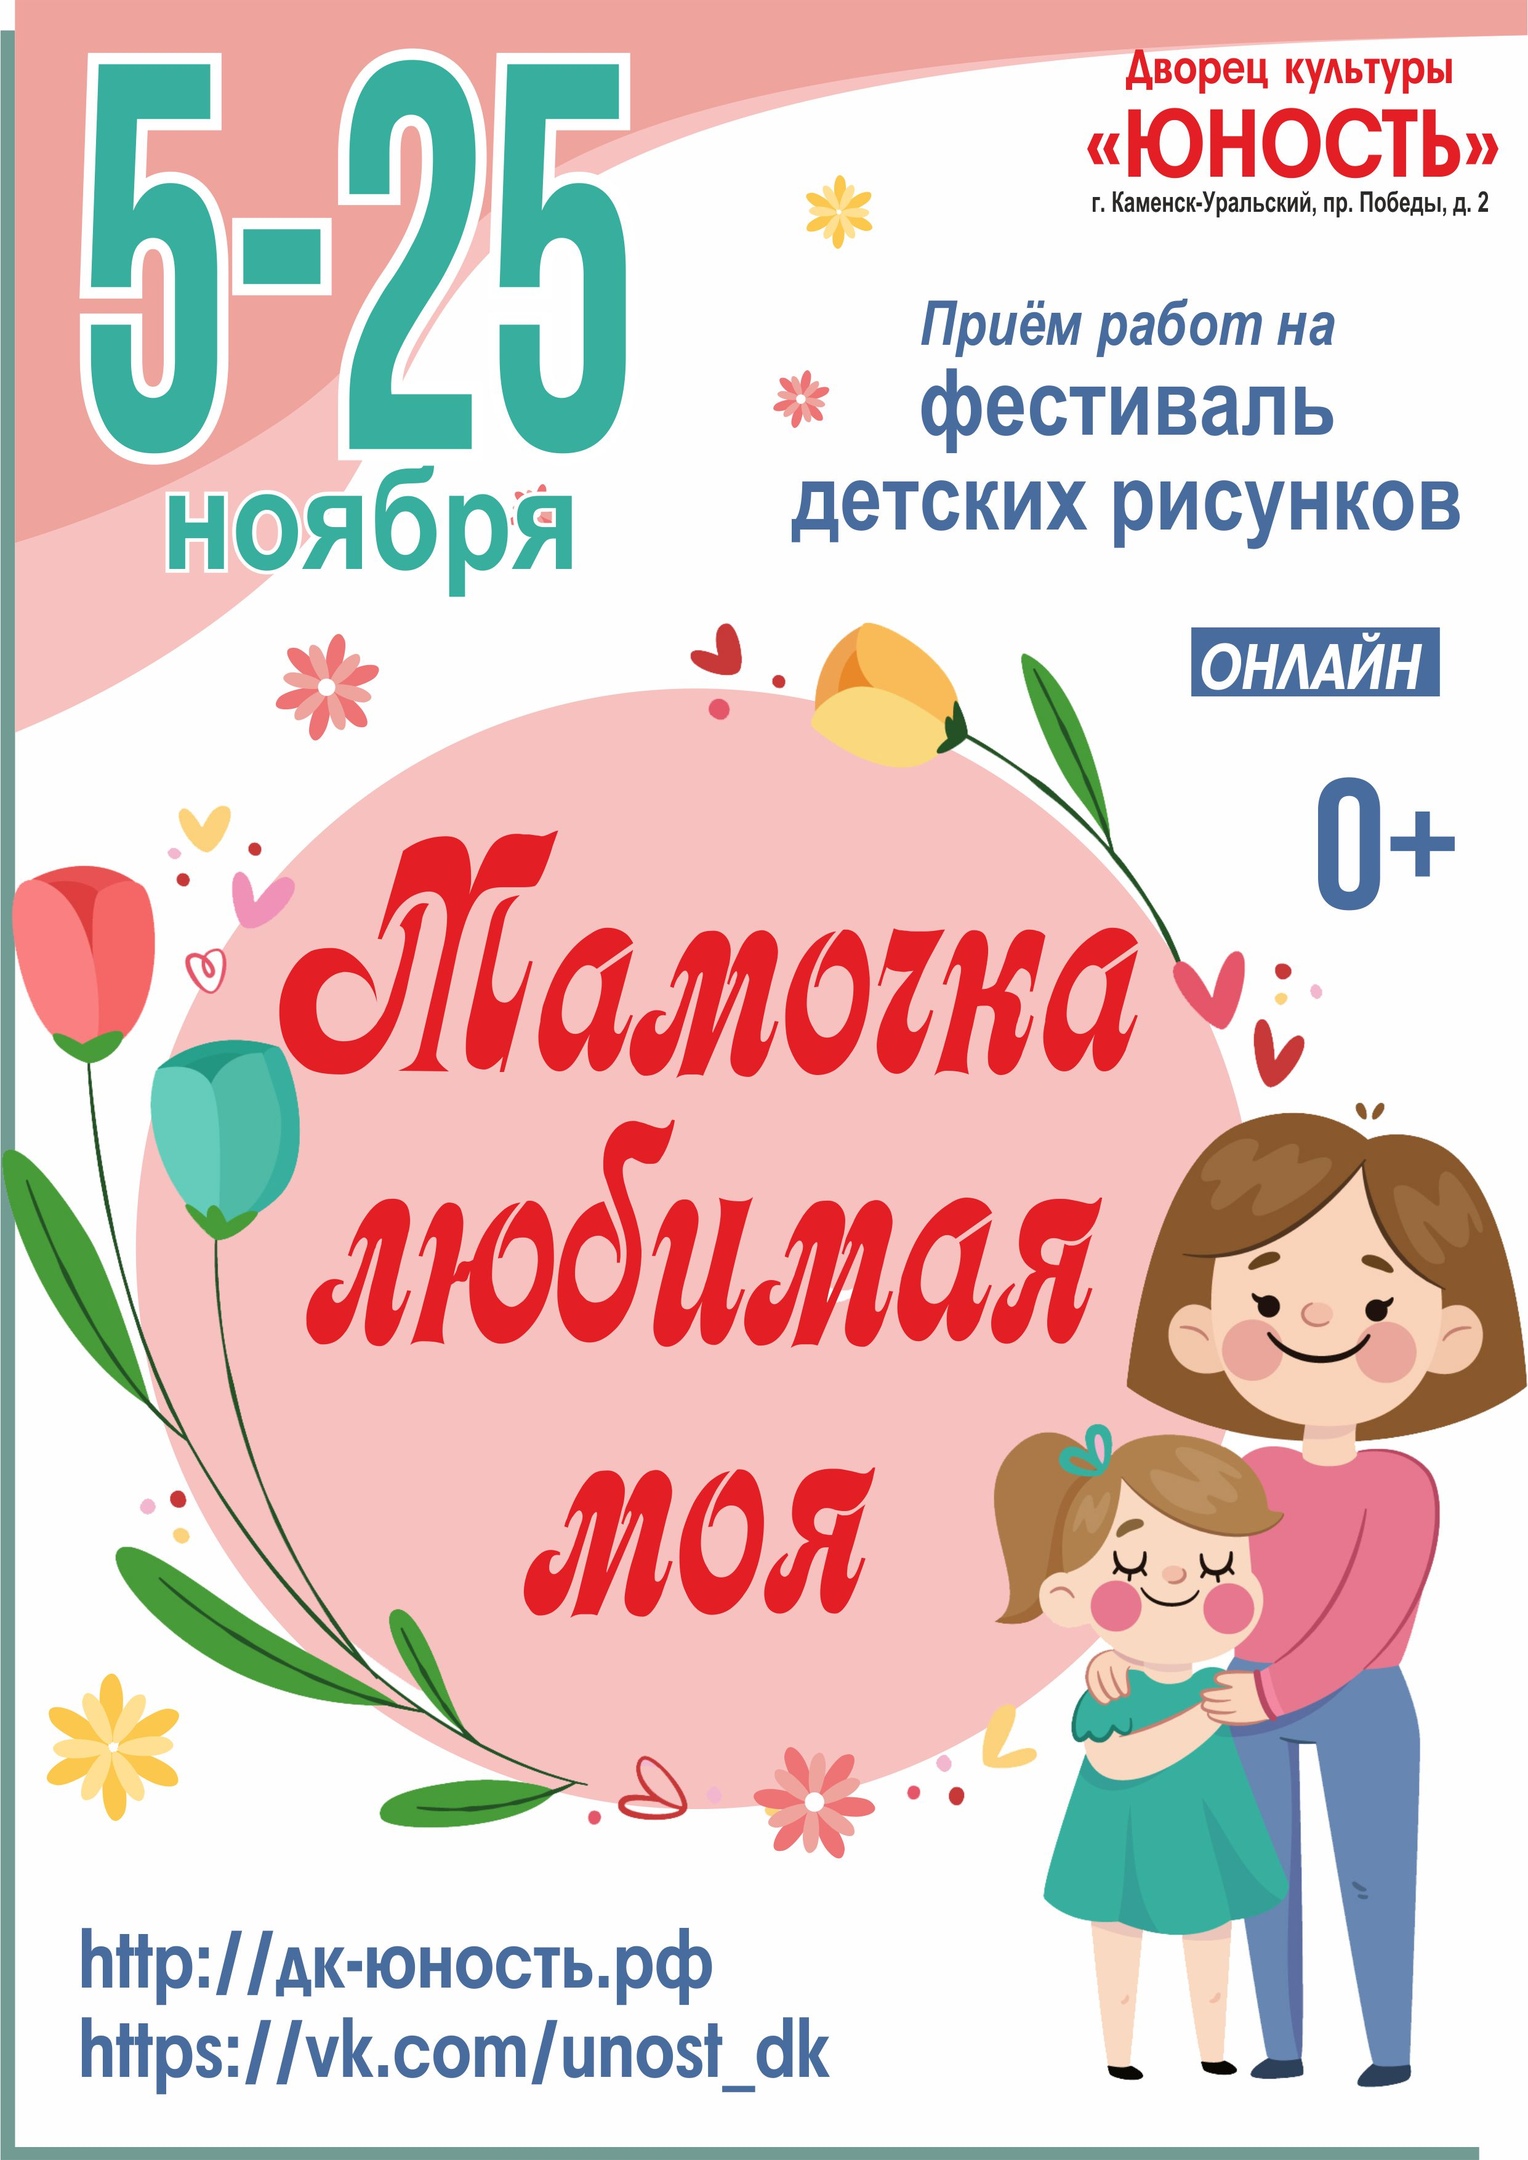 Сценарий конкурса посвященный к празднику 8 марта Мамы и дочки, для учащихся начальных классов